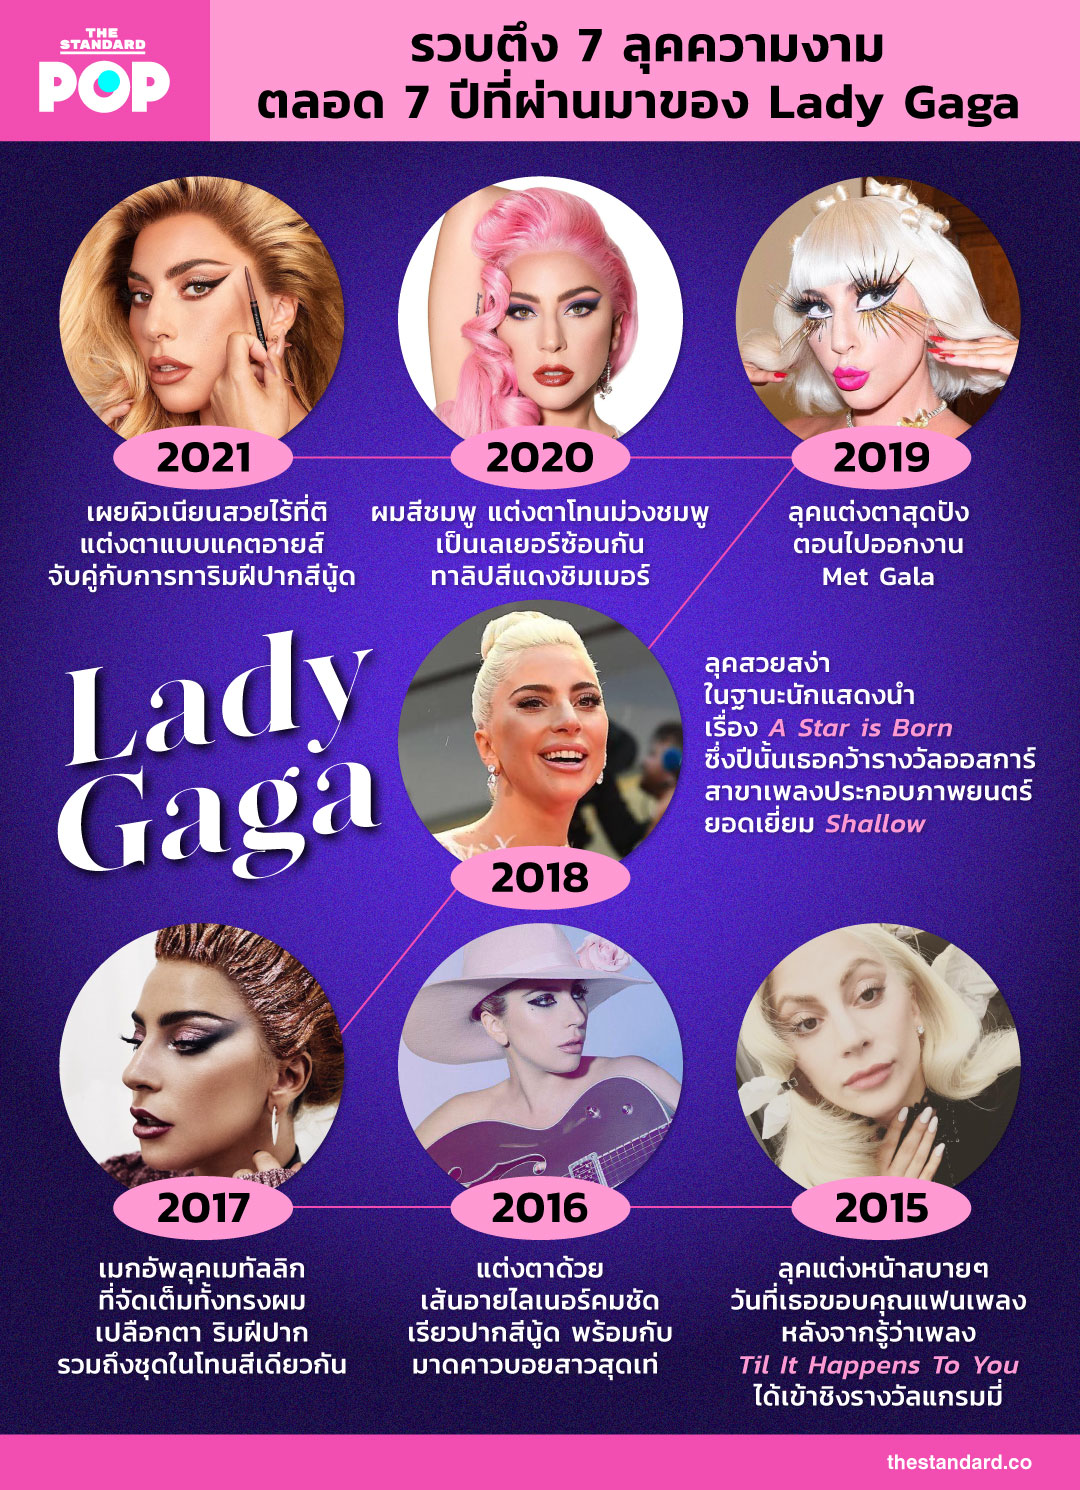 ความงามตลอด 7 ปีที่ผ่านมาของ Lady Gaga  